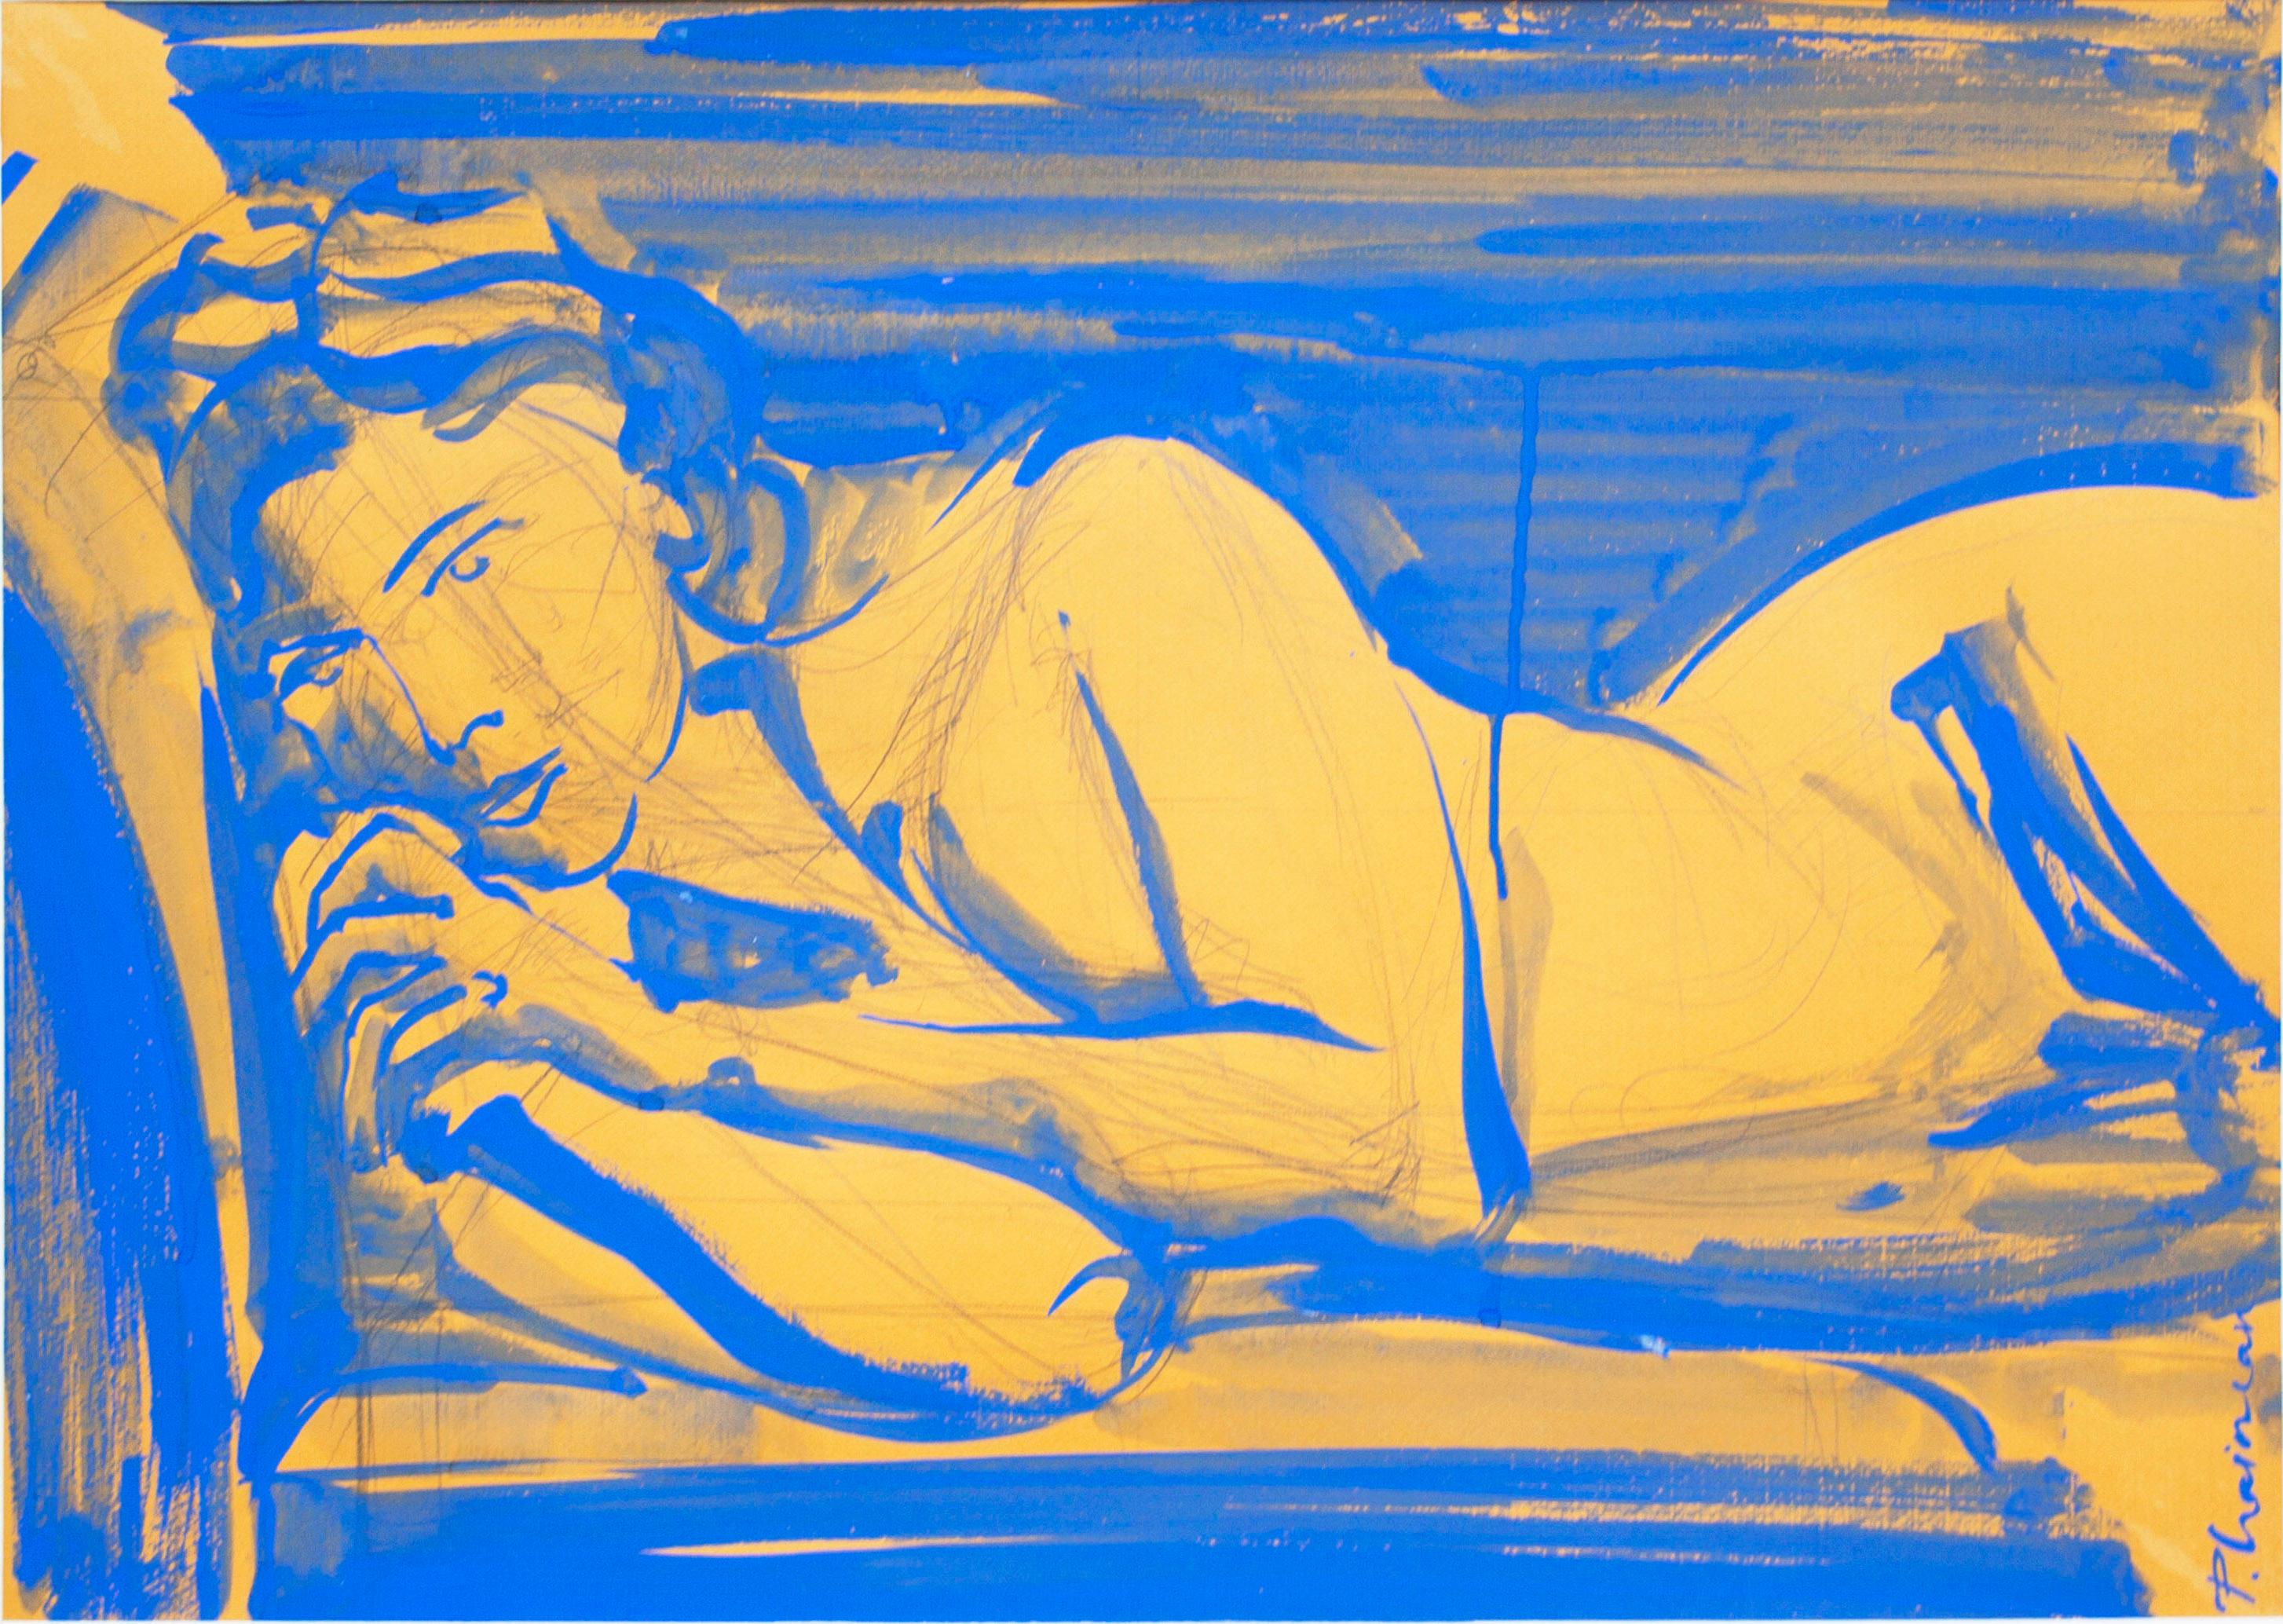 
Bleu (femme) Nu. Inspiré par Matisse. Une partie de ma série Nus à l'intérieur.
Original, signé.
50x70cm / 19.5x27.5in taille réelle

encre, graphite, tempera sur papier
Expédition roulée dans un tube, directement de l'artiste.